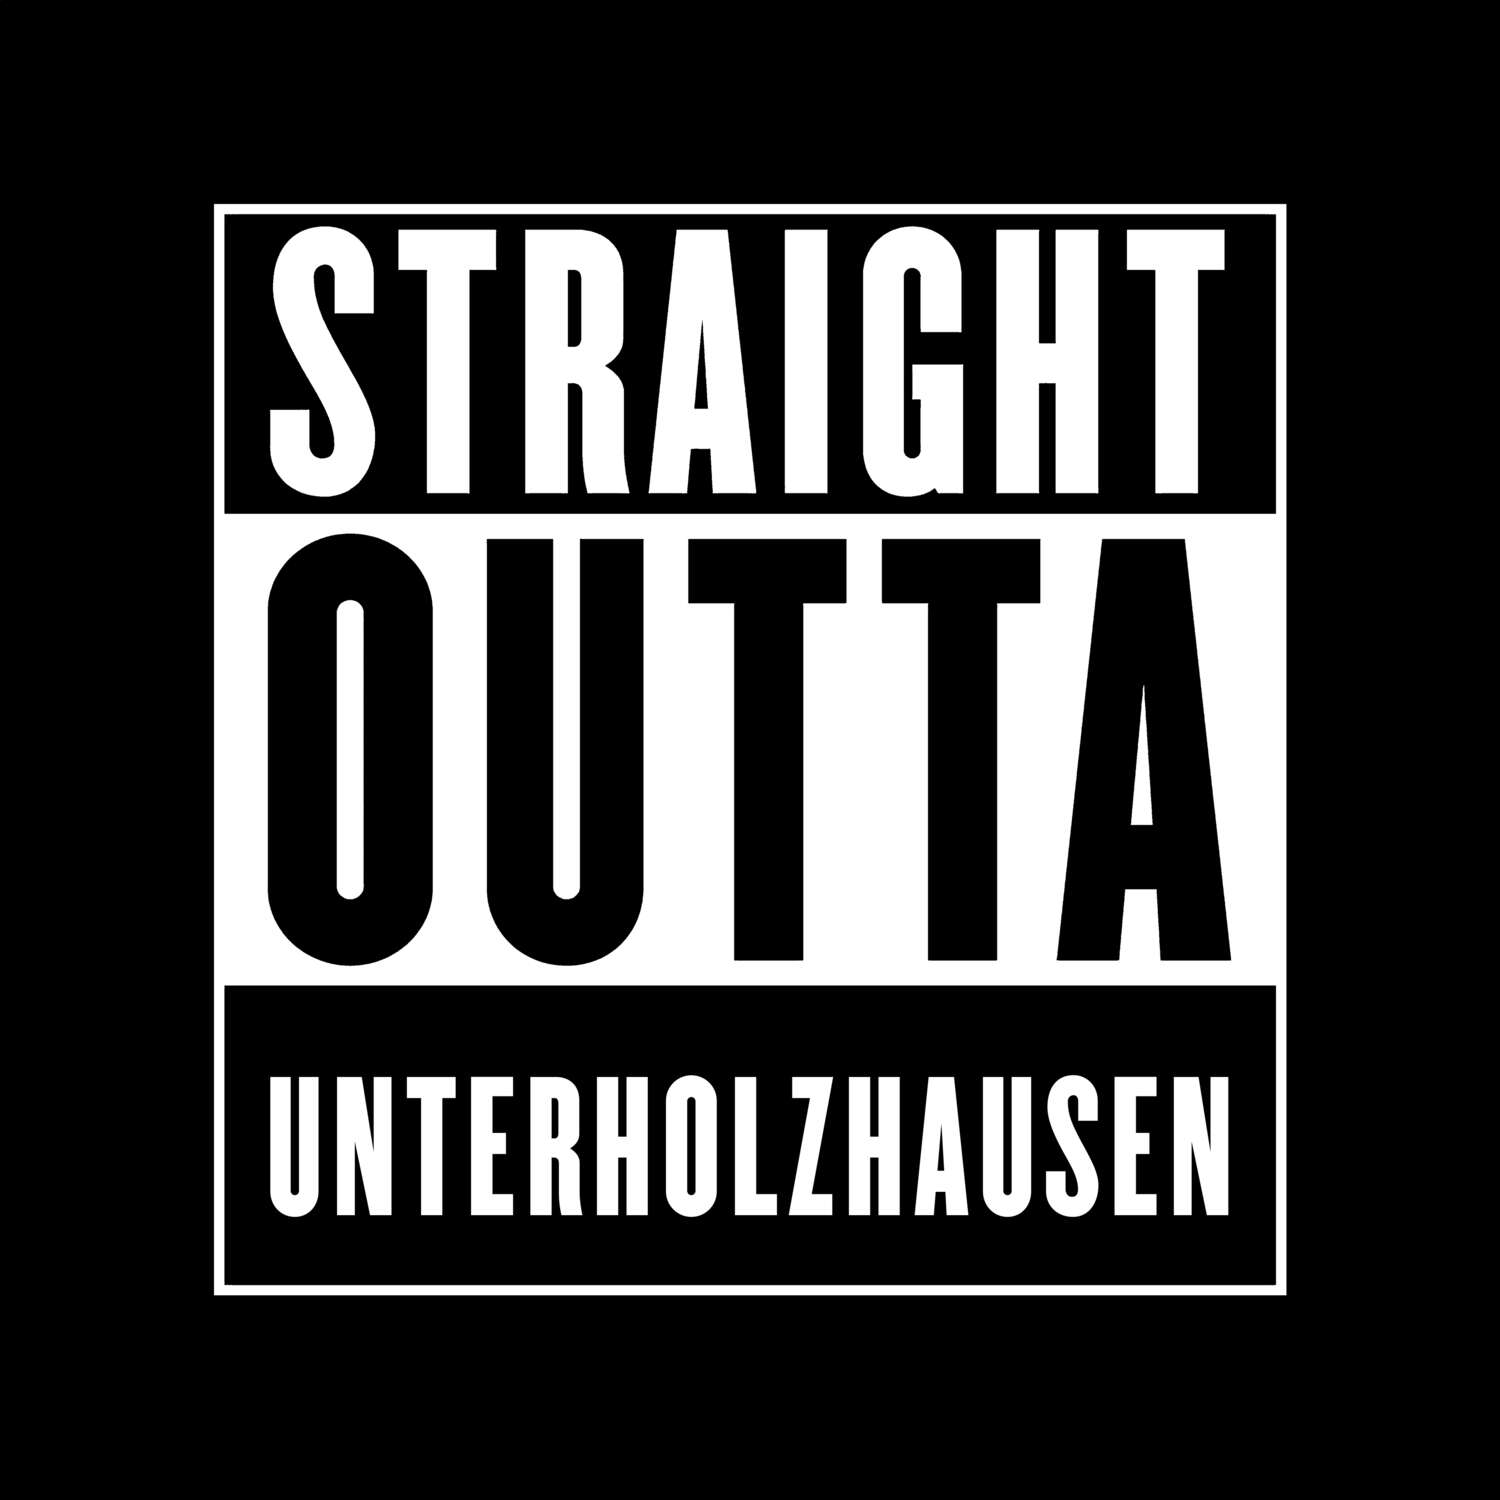 Unterholzhausen T-Shirt »Straight Outta«